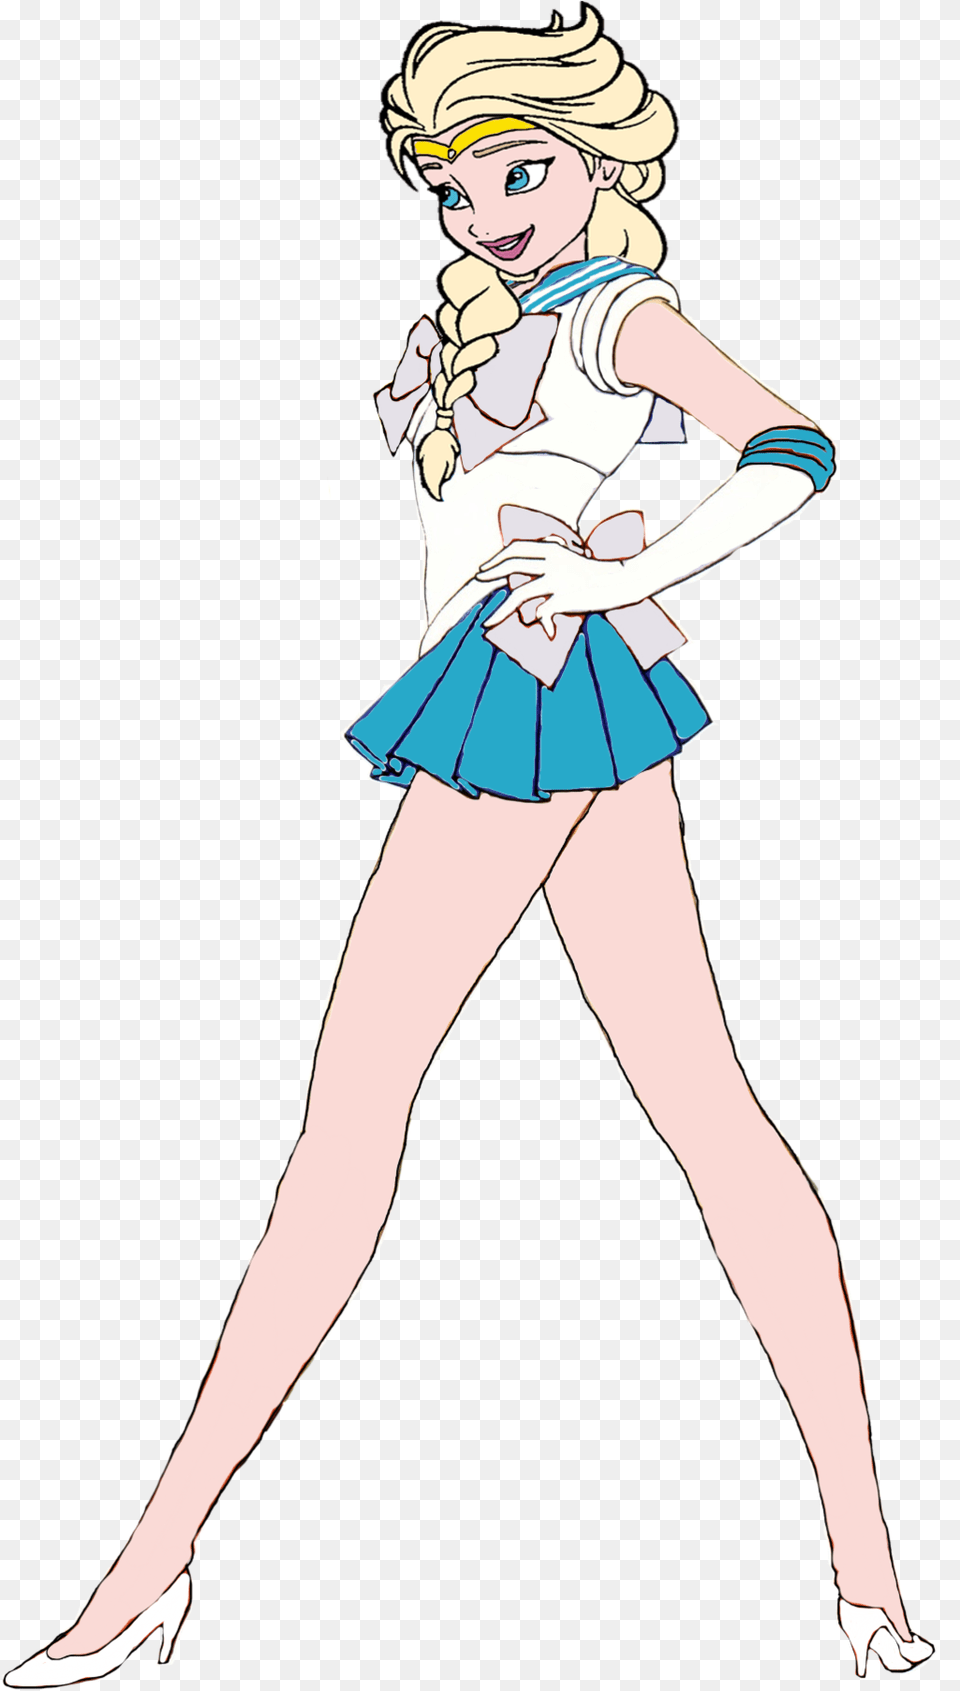 Queen Elsa As A Sailor Scout By Darthraner83 D6u7hfp Molly Baker Sailor Moon, Publication, Book, Comics, Adult Free Png